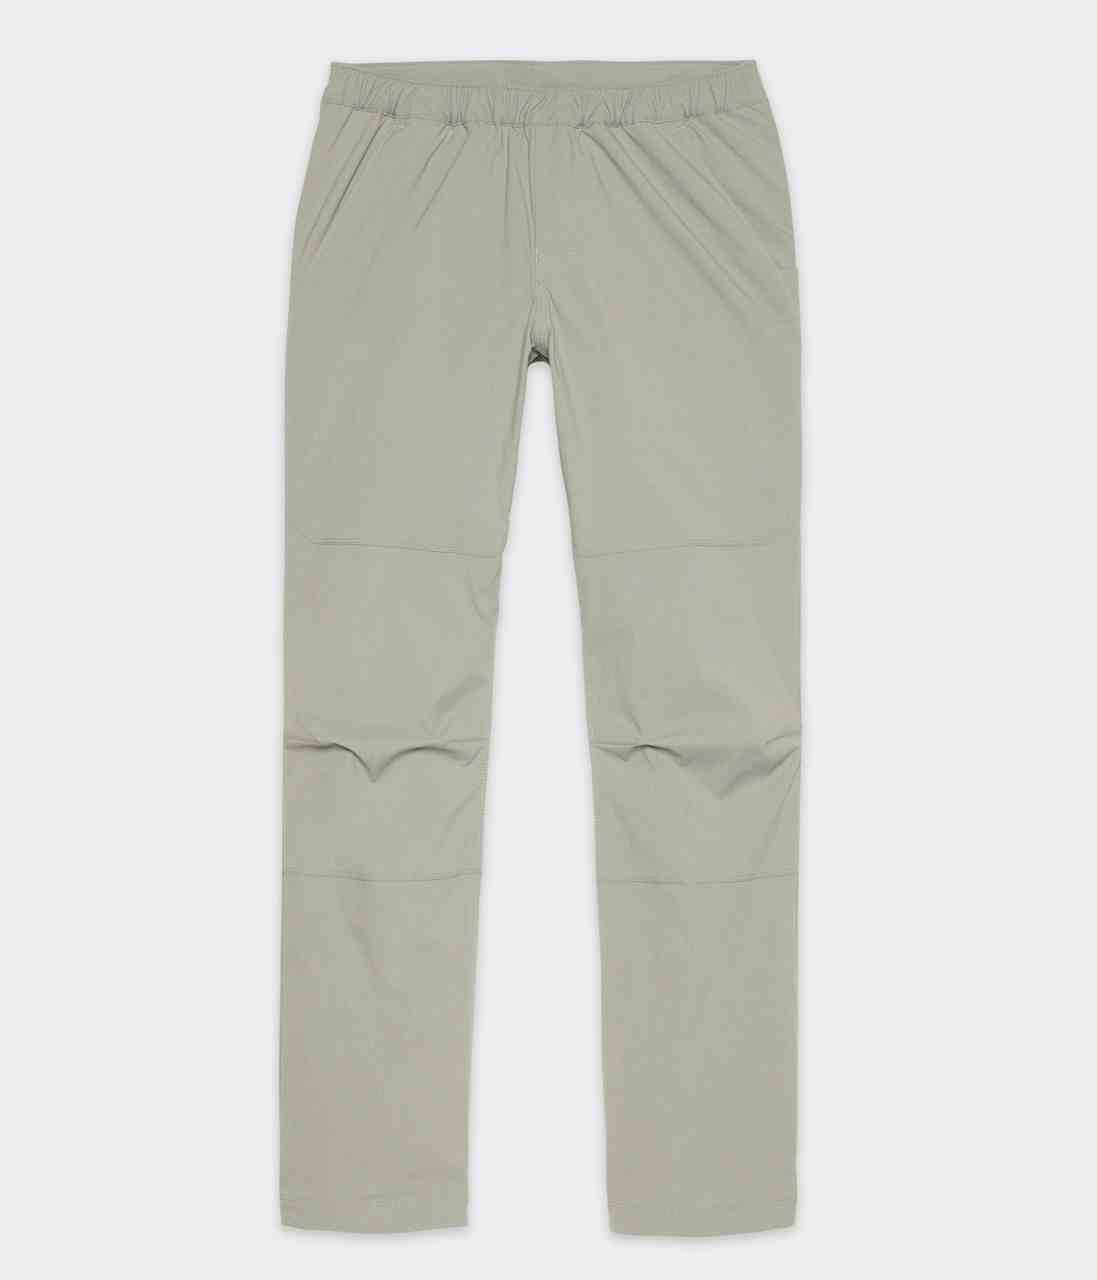 RnB Pants Neutral Grey